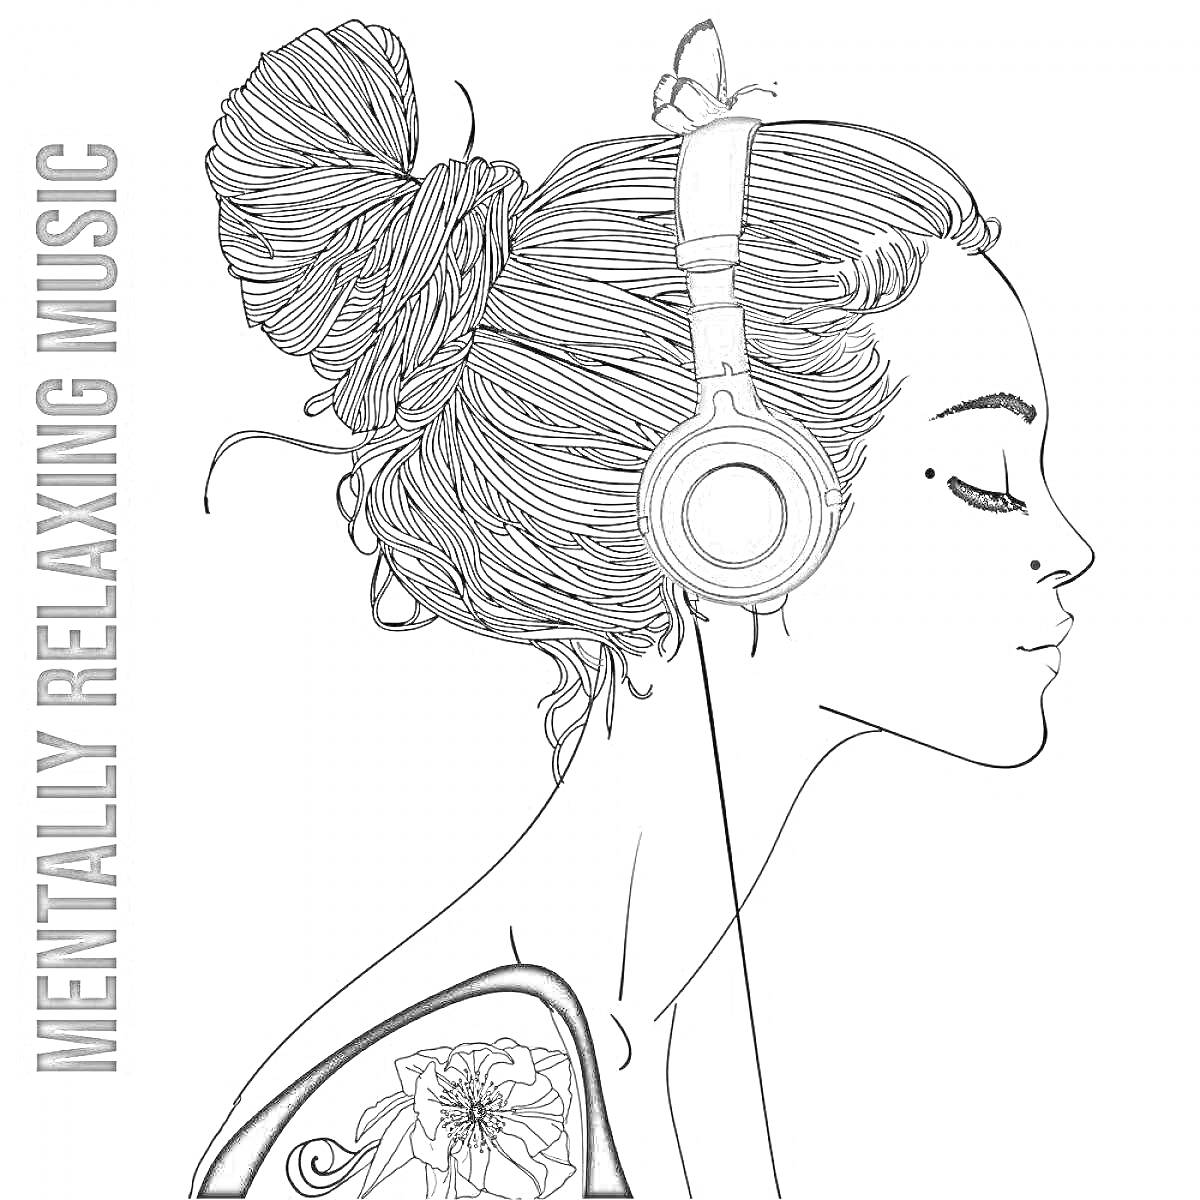 Раскраска Девочка с пучком волос, в наушниках, с татуировкой на плече, надпись 